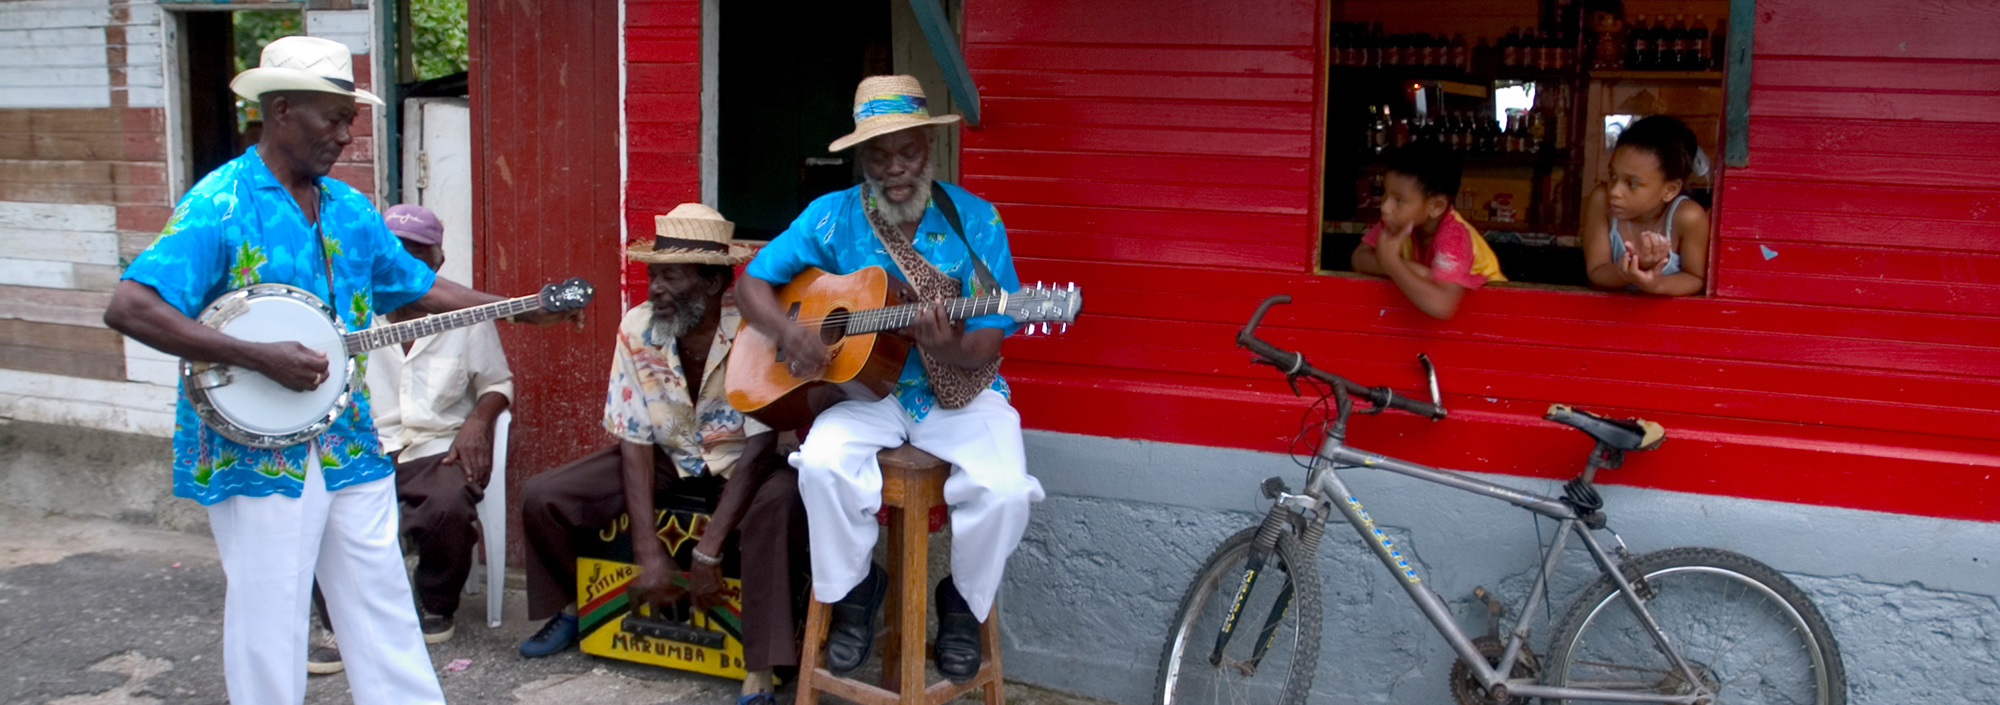 Straßenmusiker vor einer Bar in Jamaica